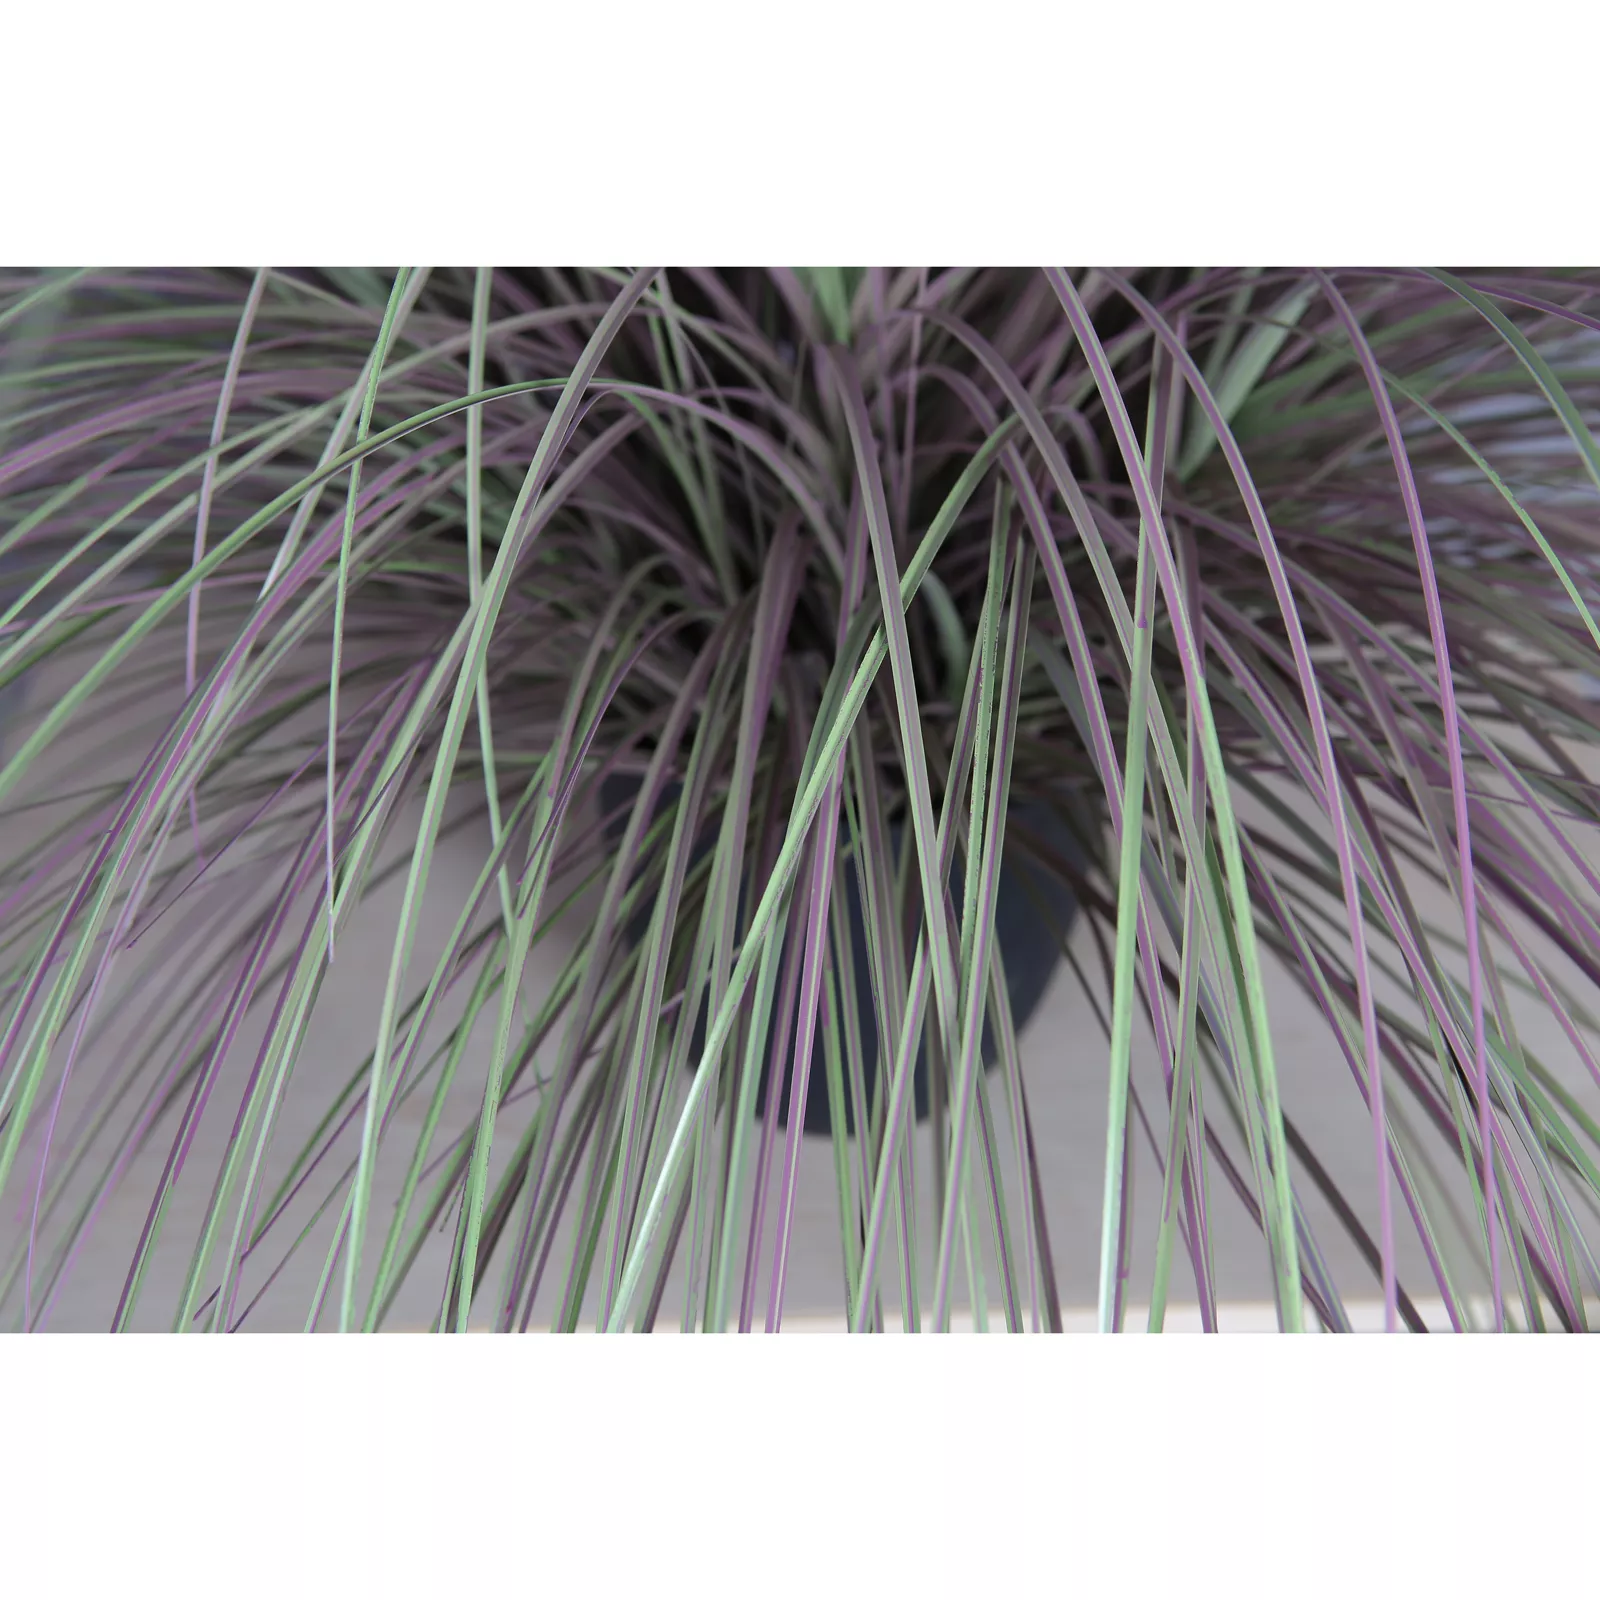 Kunstplant Gras Luxe (137cm) - Witte pluim